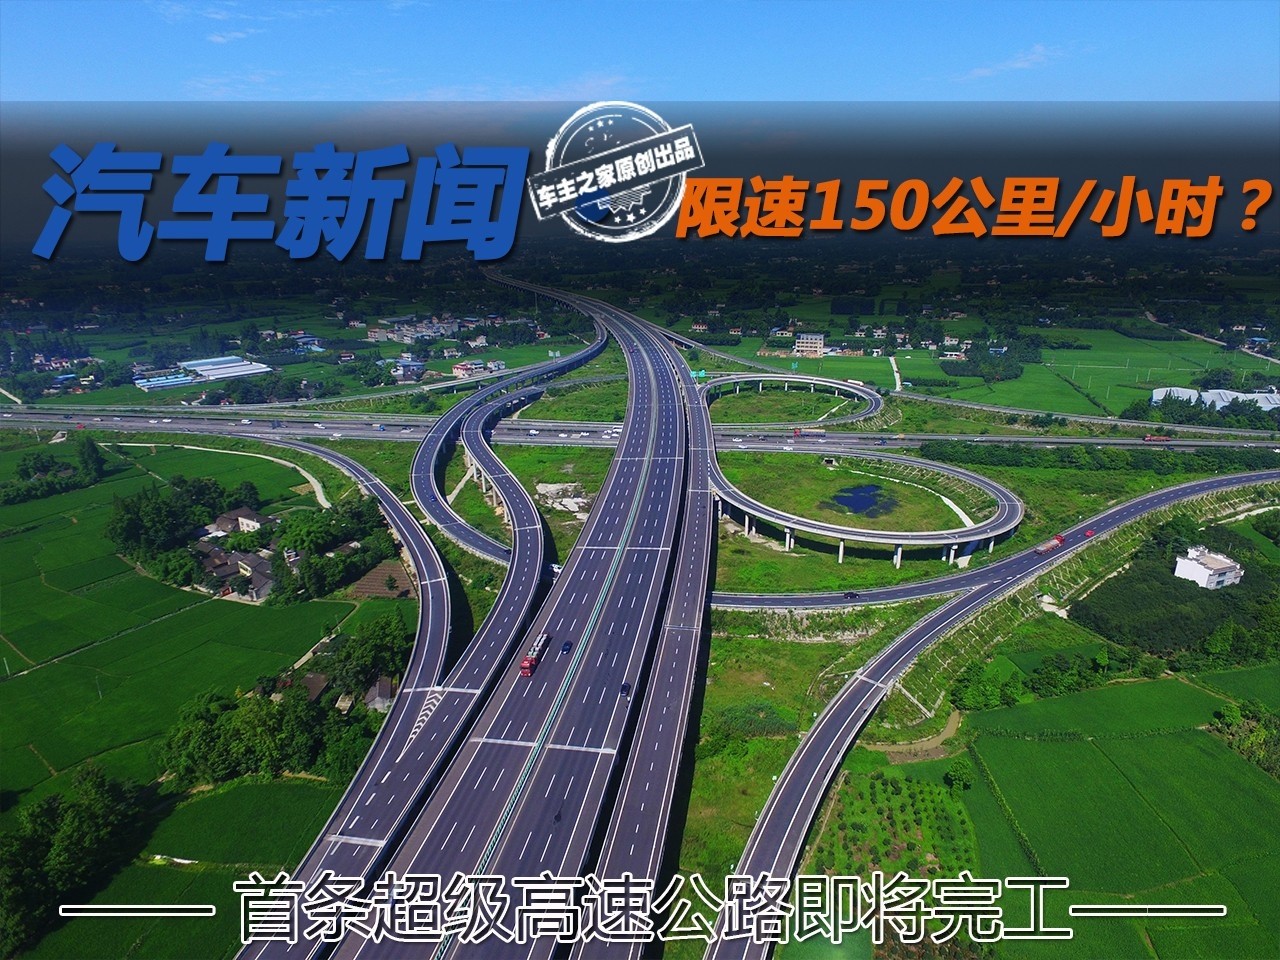 限速150km/h能否实现?首条超级高速公路即将完工